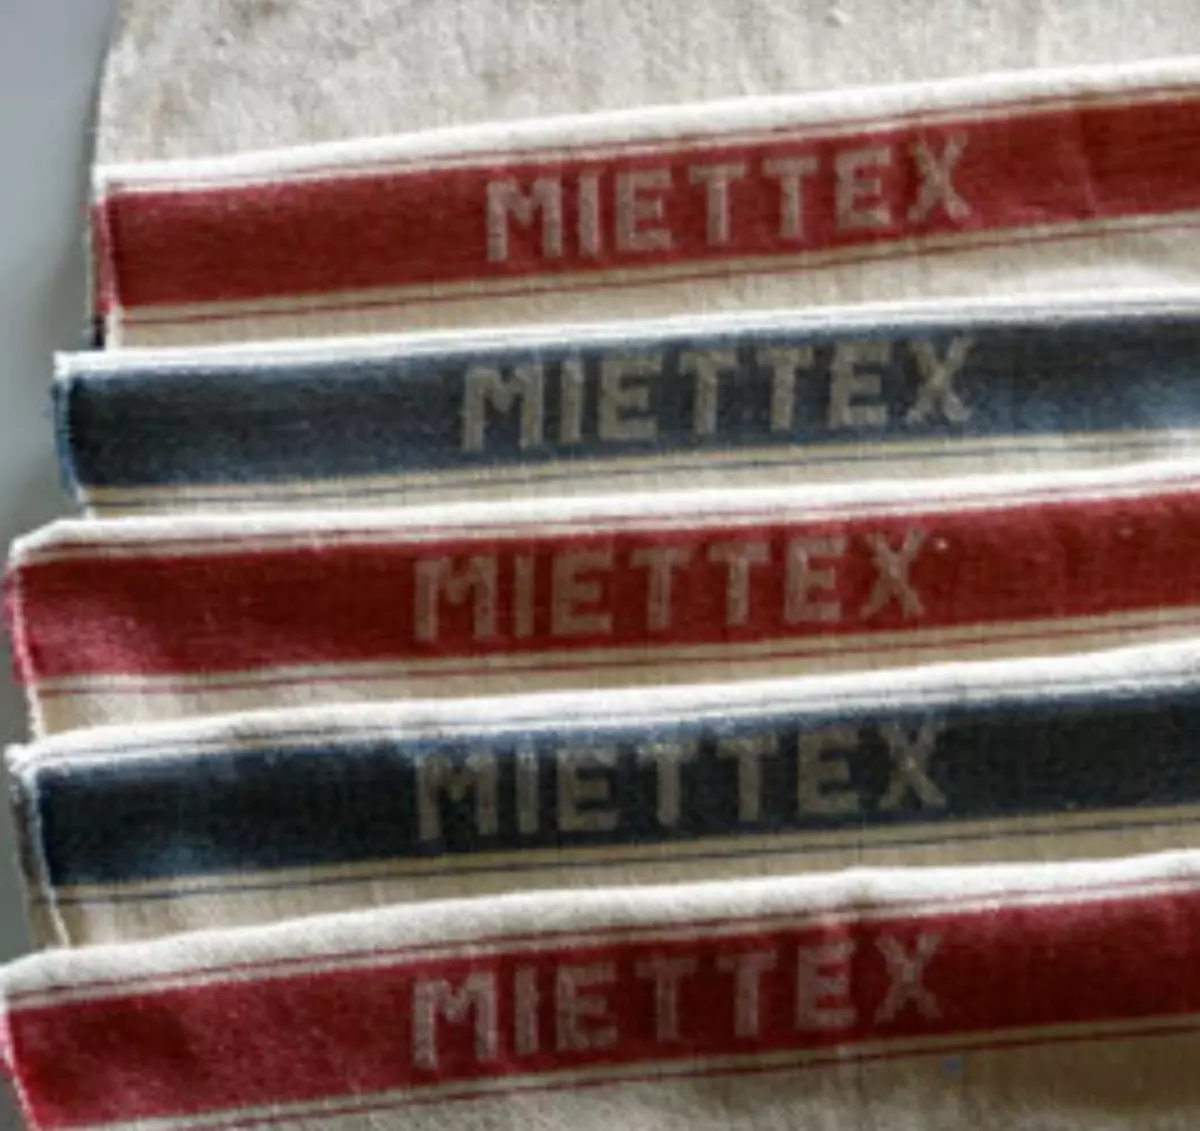 Miettex Maschinenputztücher in blau und rot